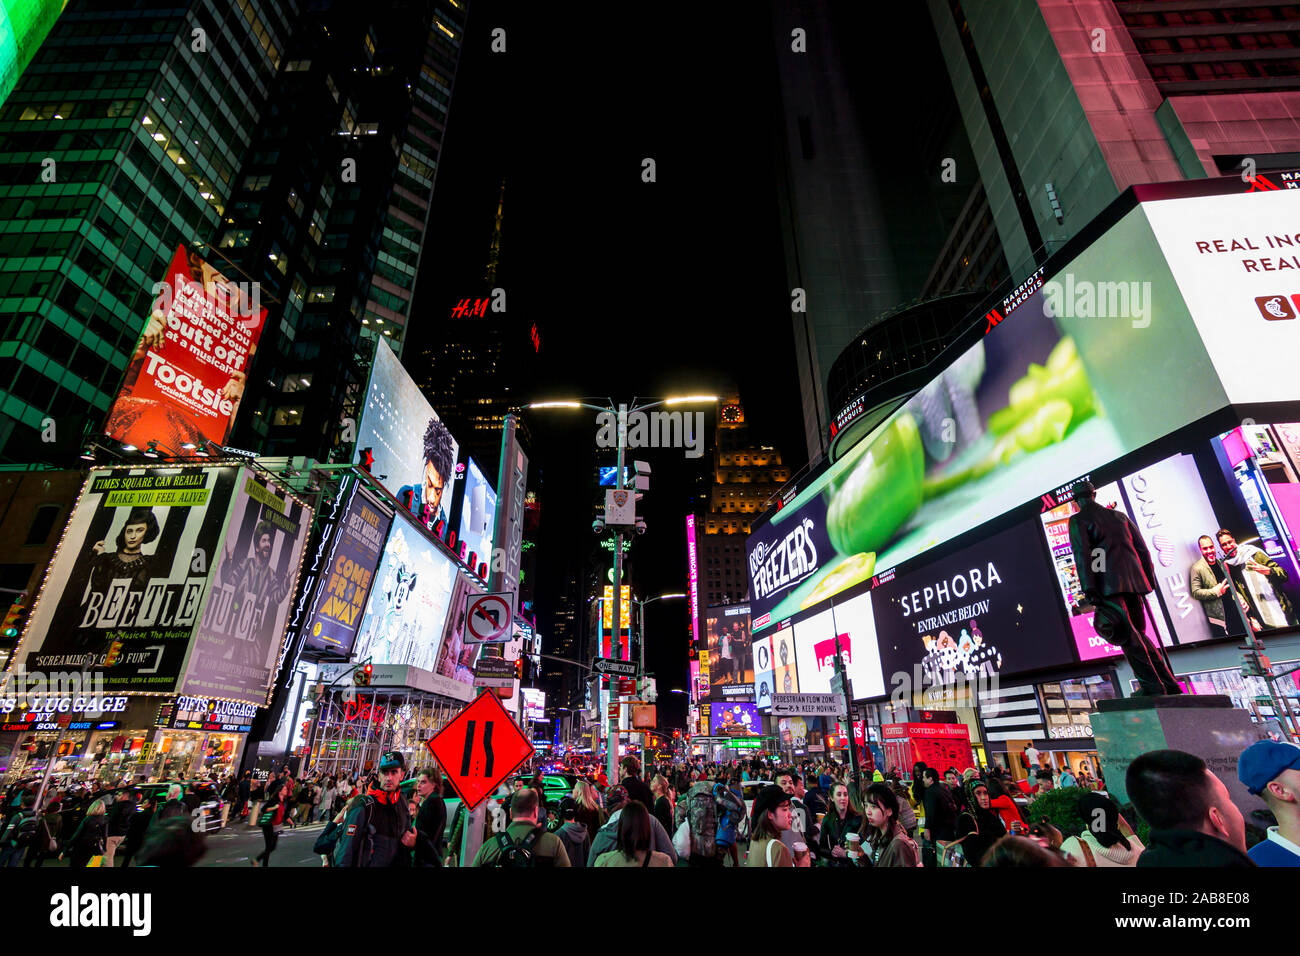 La città di New York, Stati Uniti: 15 ottobre 2019: Times Square, frenetica e affollata intersezione in Manhattan, con molti annunci al neon in un iconico street di Foto Stock